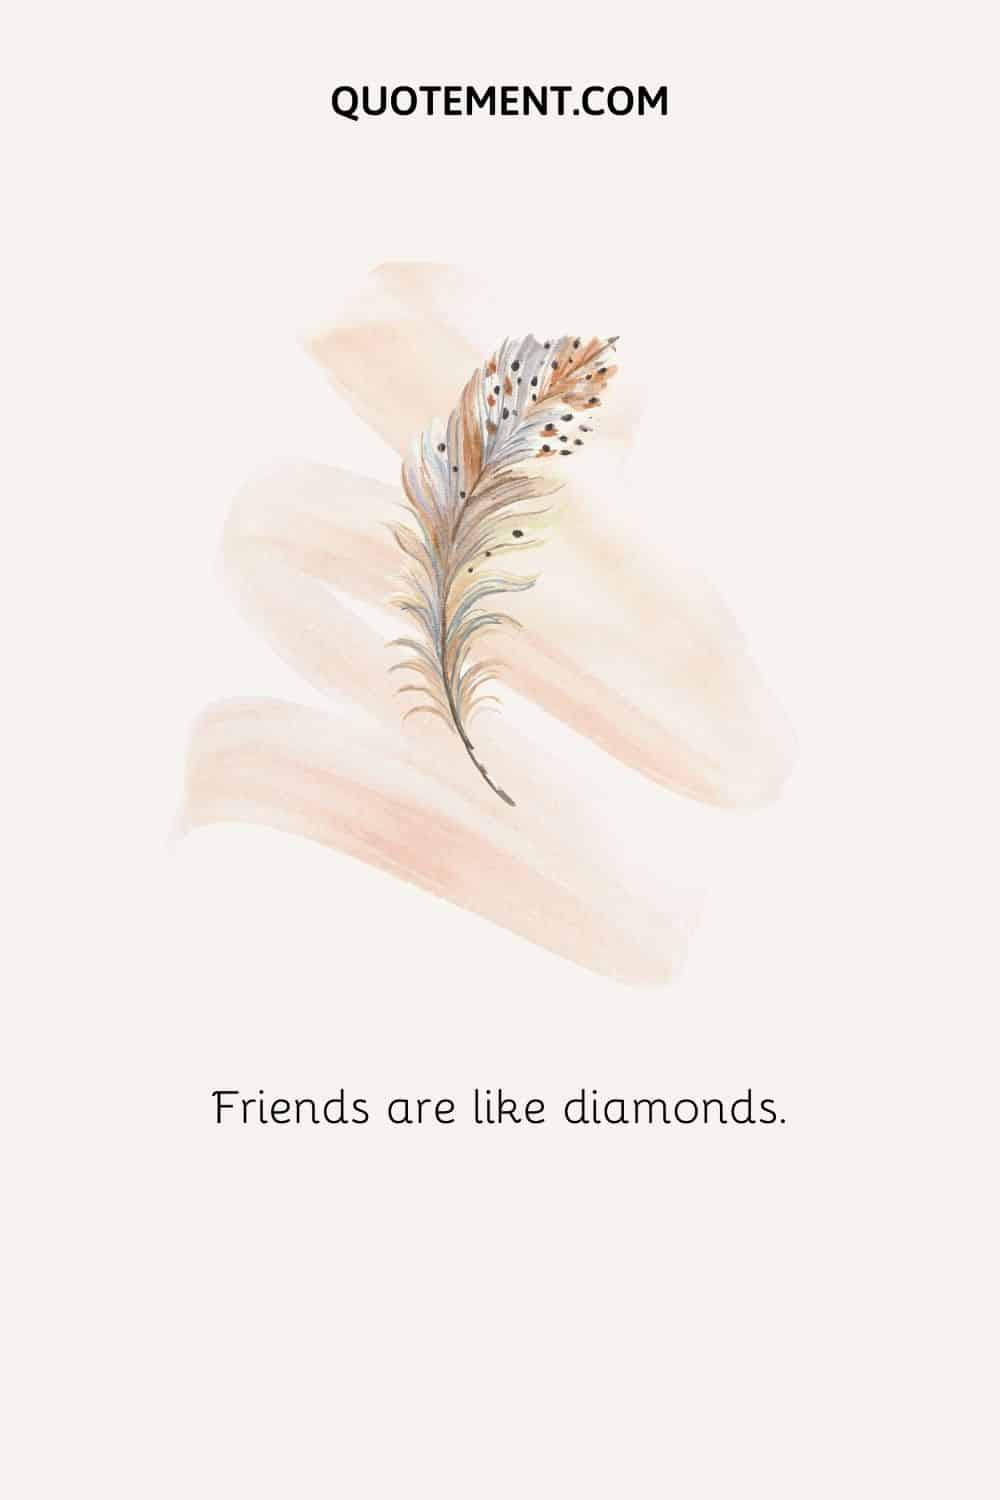 Los amigos son como los diamantes.